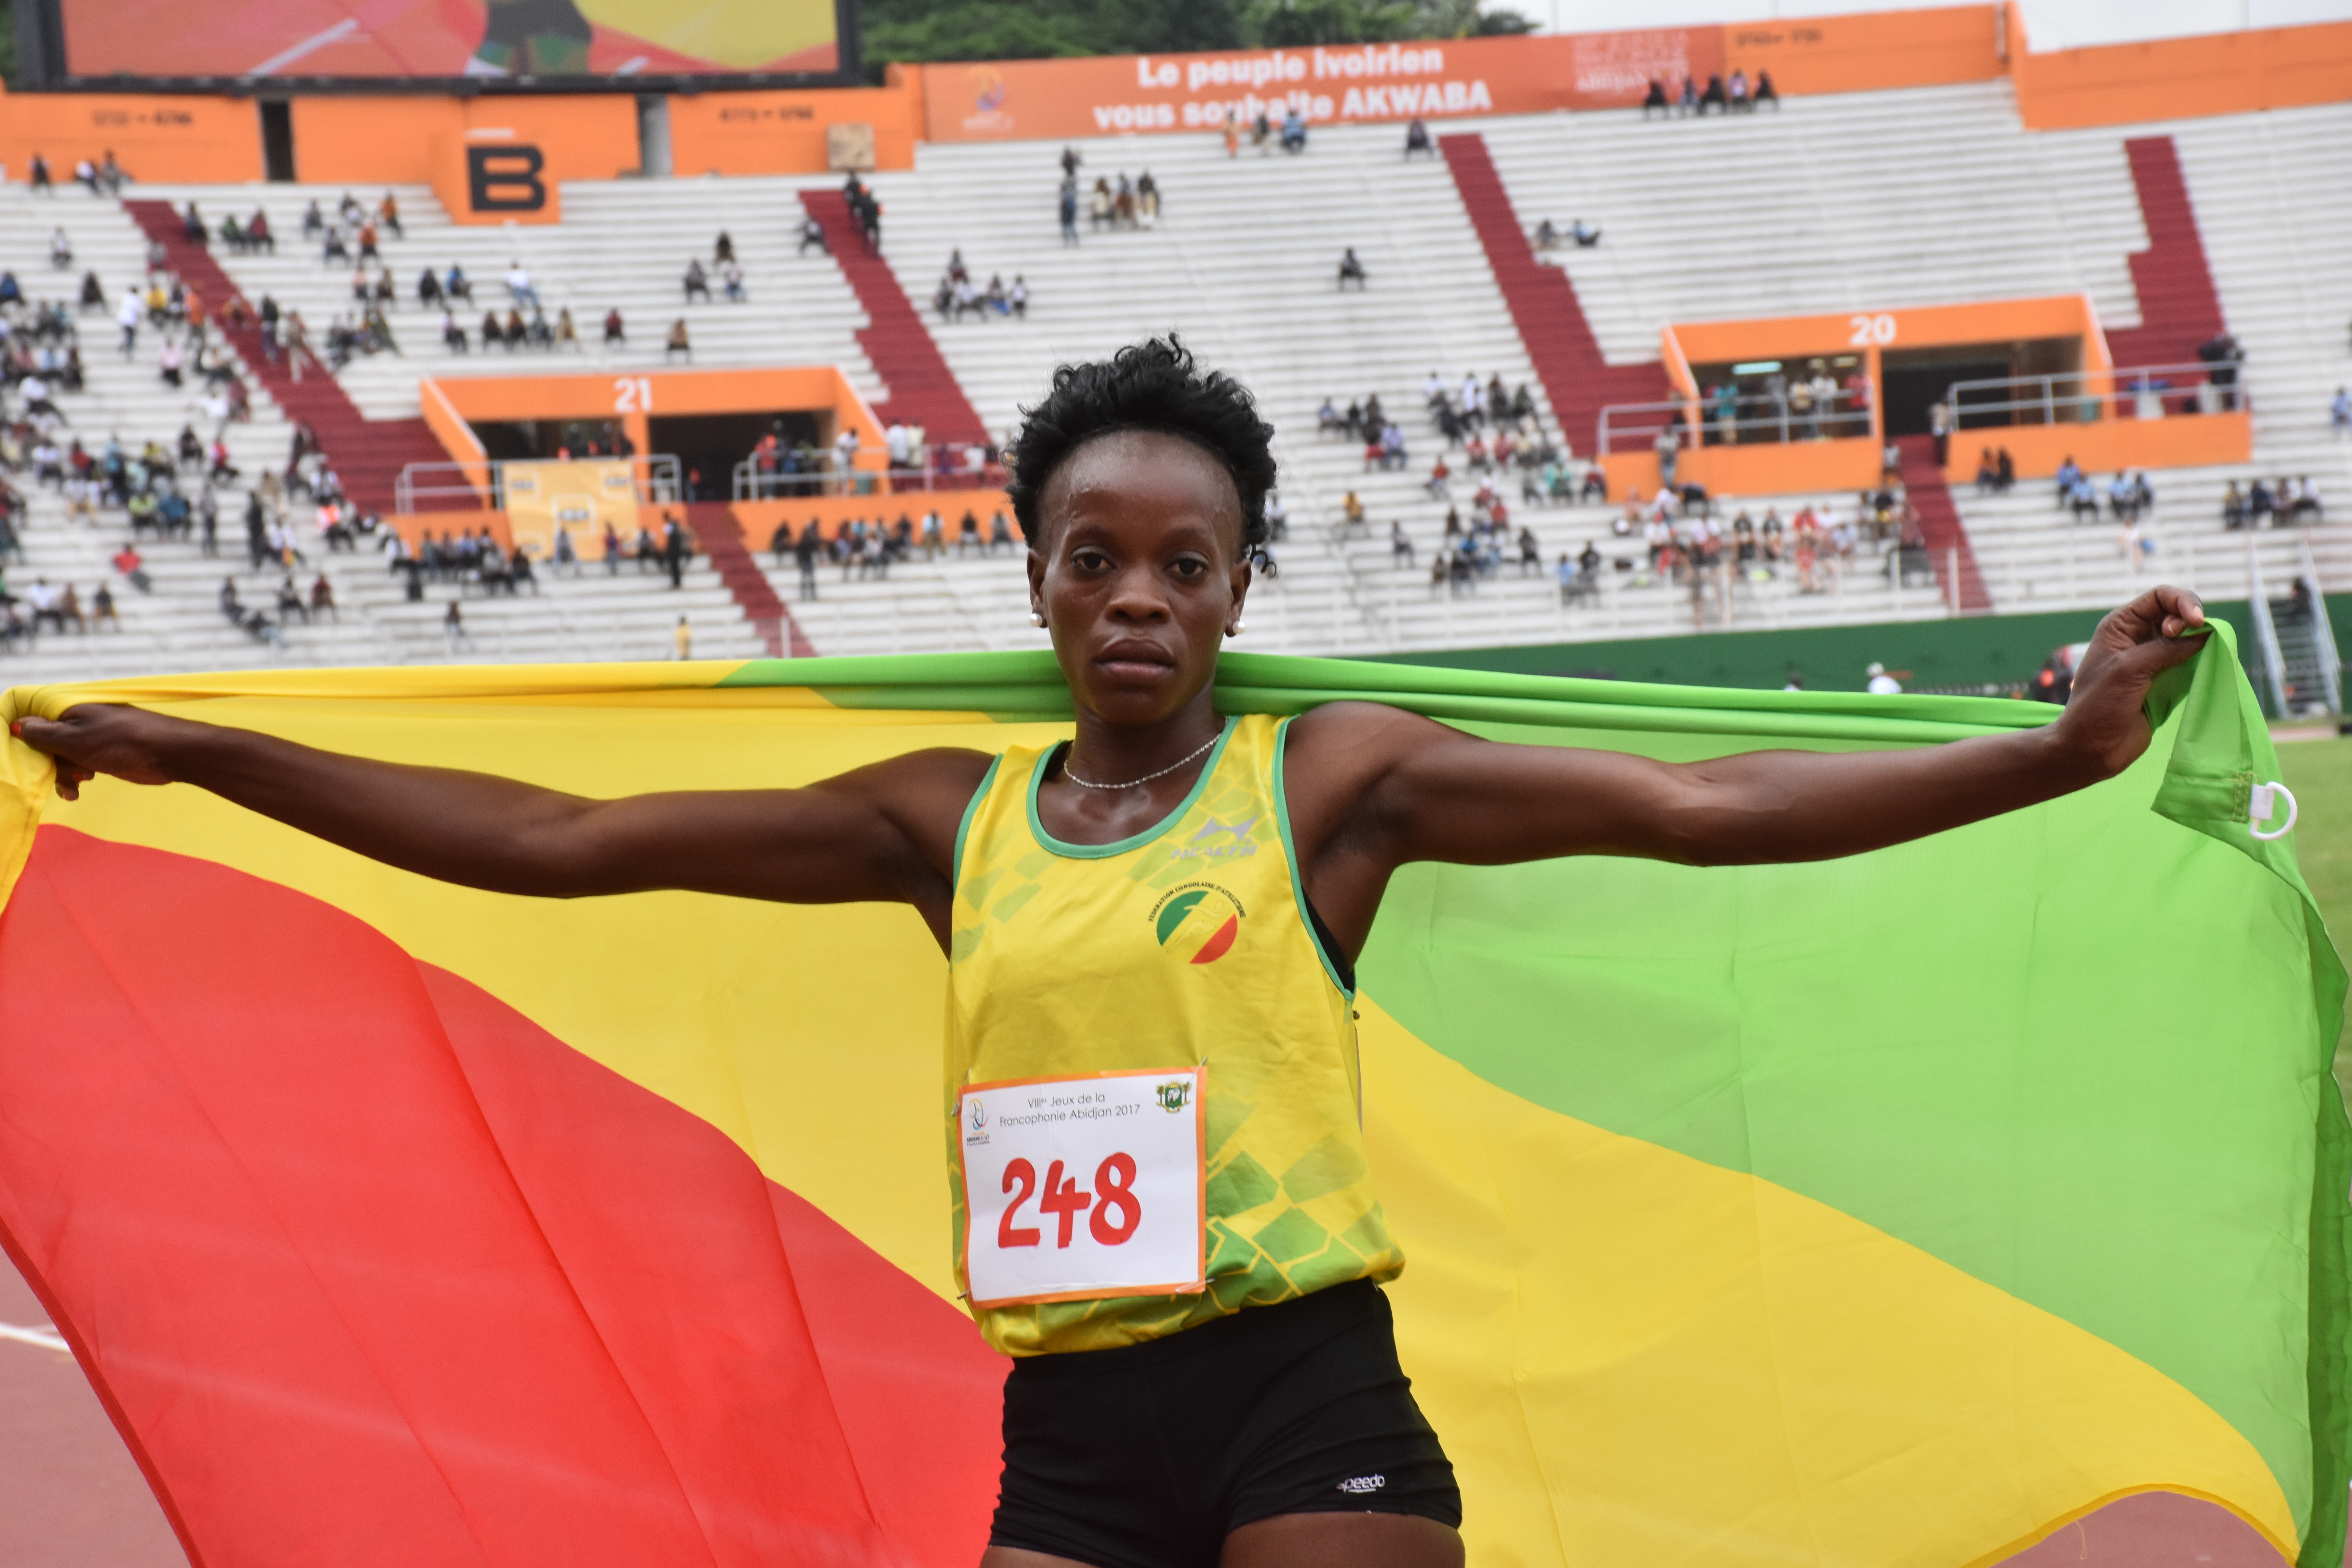 Jeux de la Francophonie: Doublé 100-200 pour la Congolaise Ngoye Akamabi